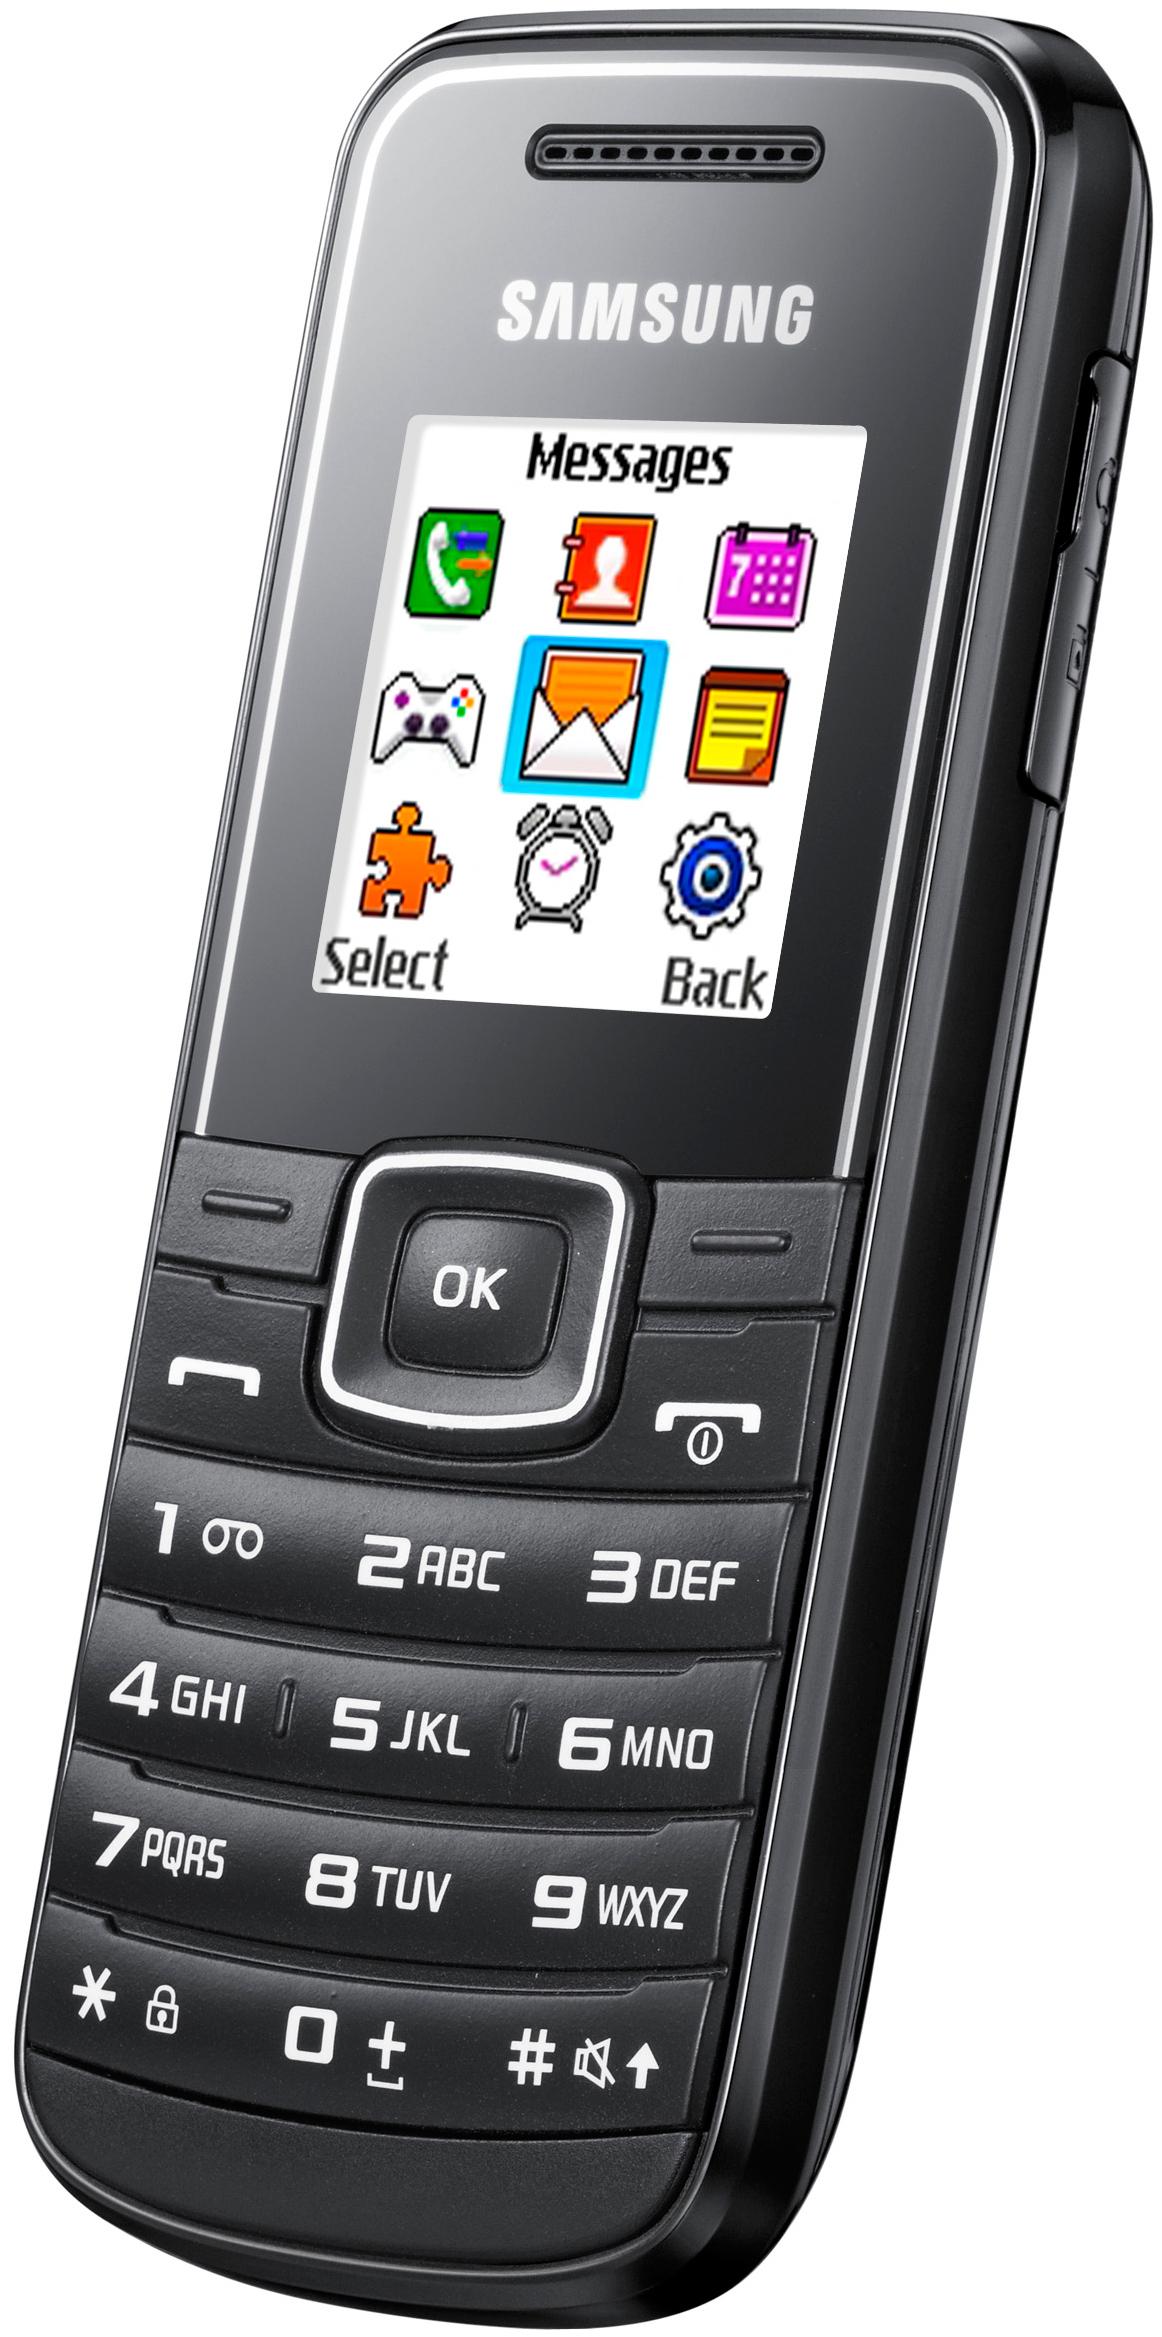 Samsung E1050 koster bare hundre kroner, og er den nest mest solgte mobilen hos Elkjøp i juli.